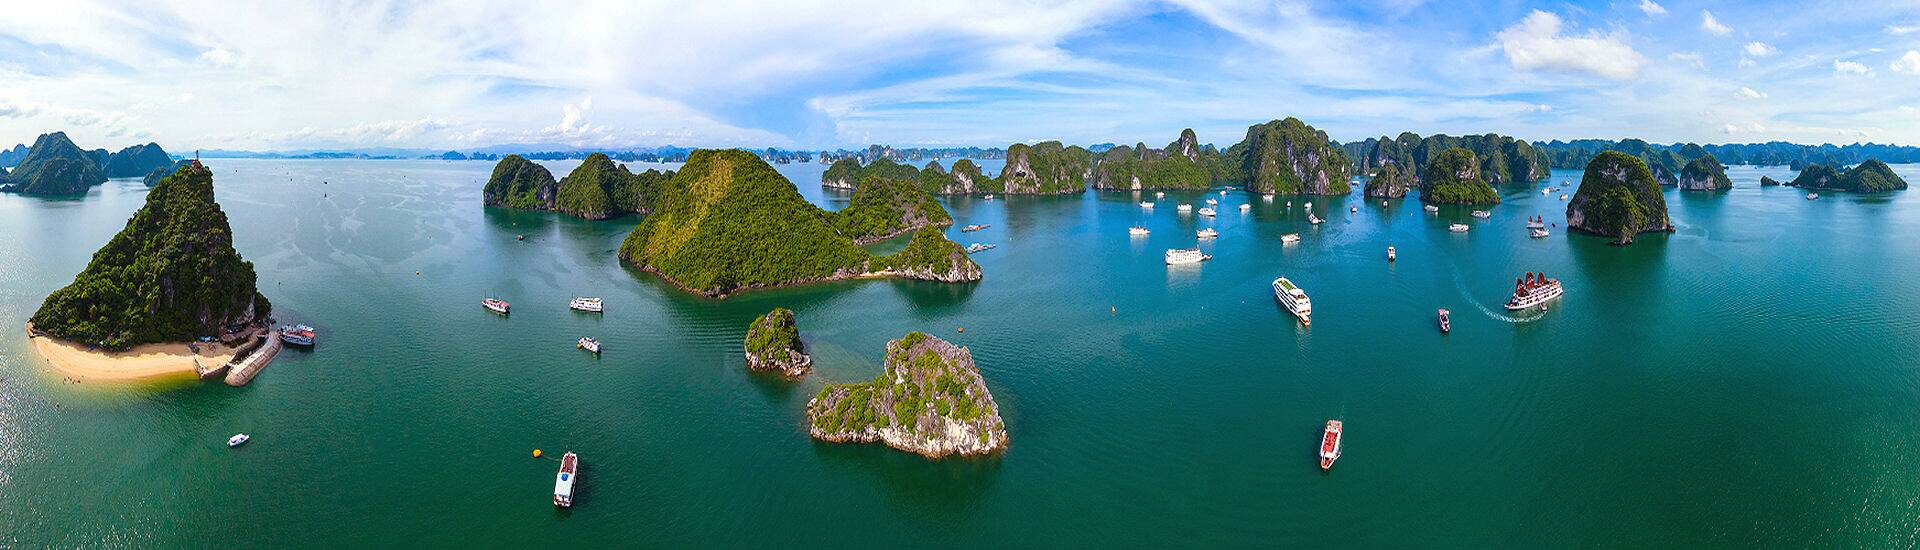 Bild der atemberaubenden Halong-Bucht in Vietnam - ein Highlight auf Ihrer Vietnam Reise